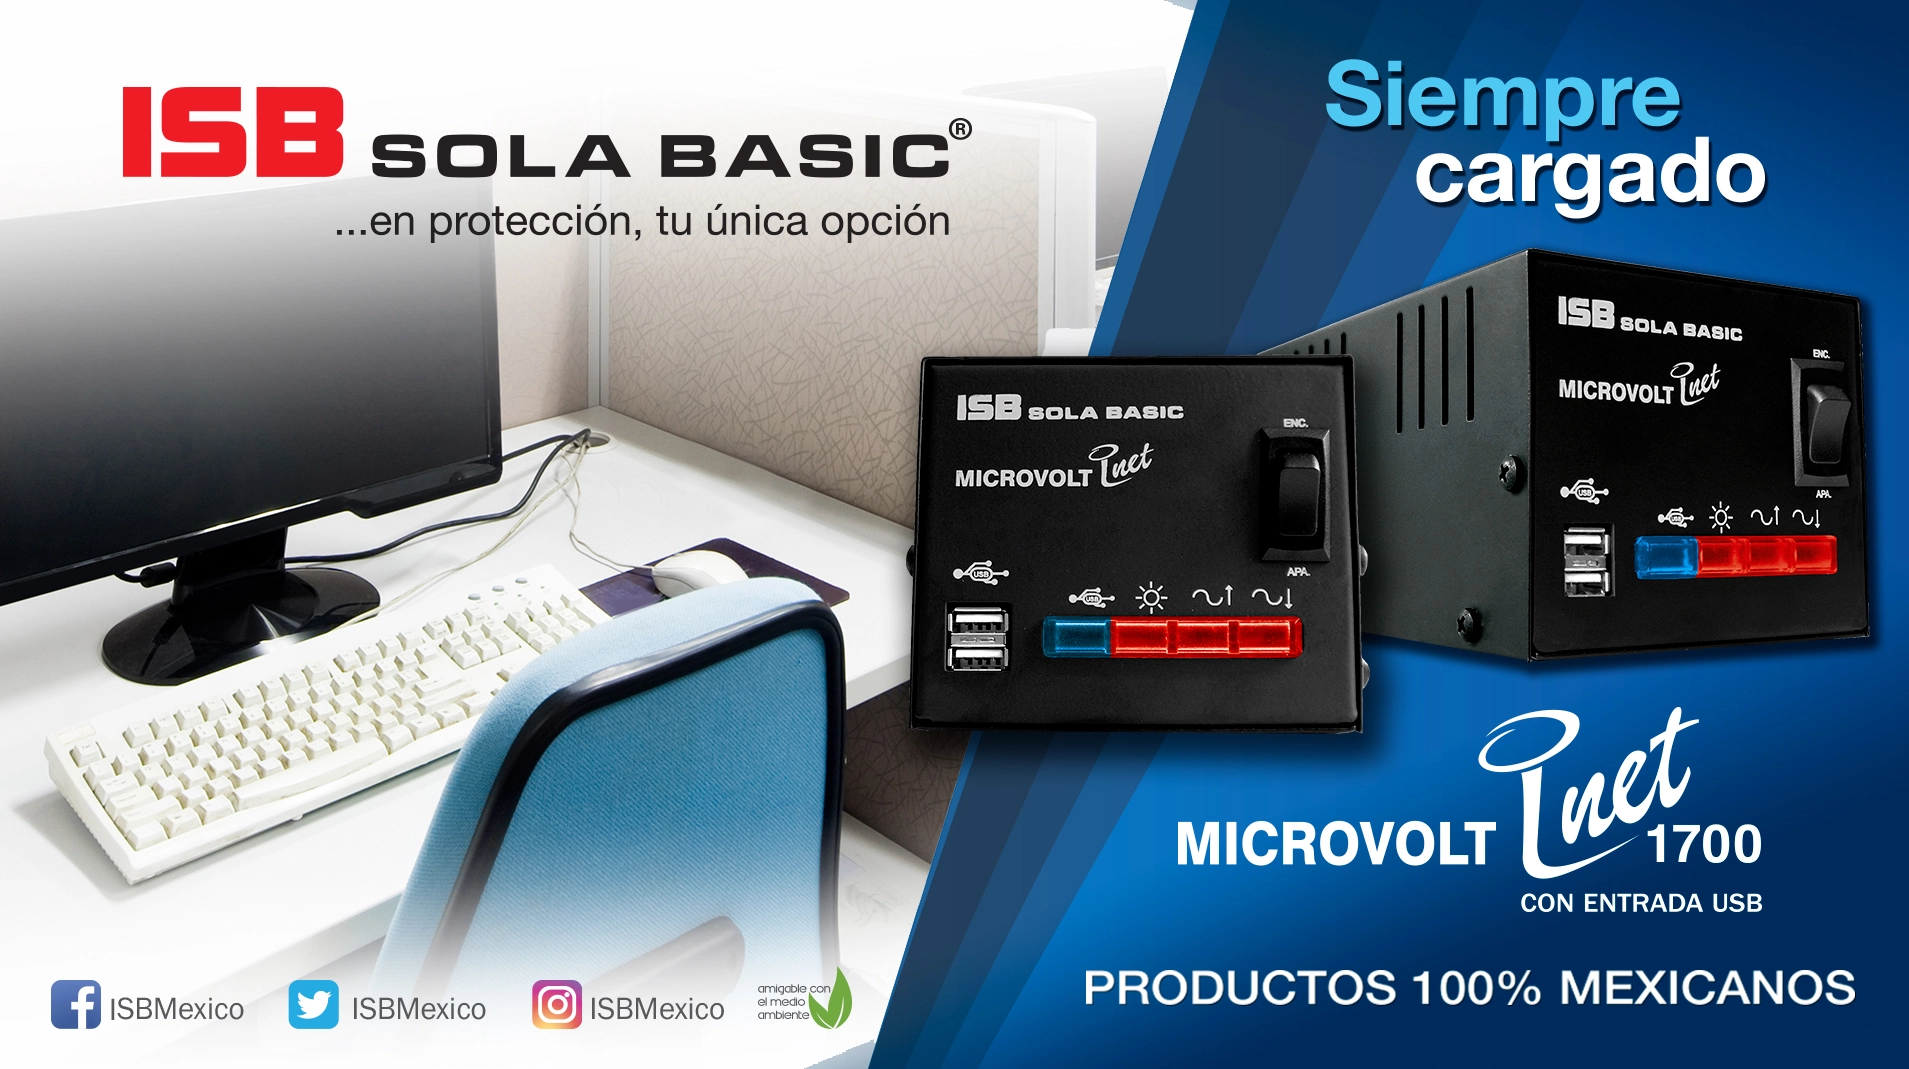 Microvolt 1700 compacto, cómodo y silencioso  con 2 puertos USB de carga.